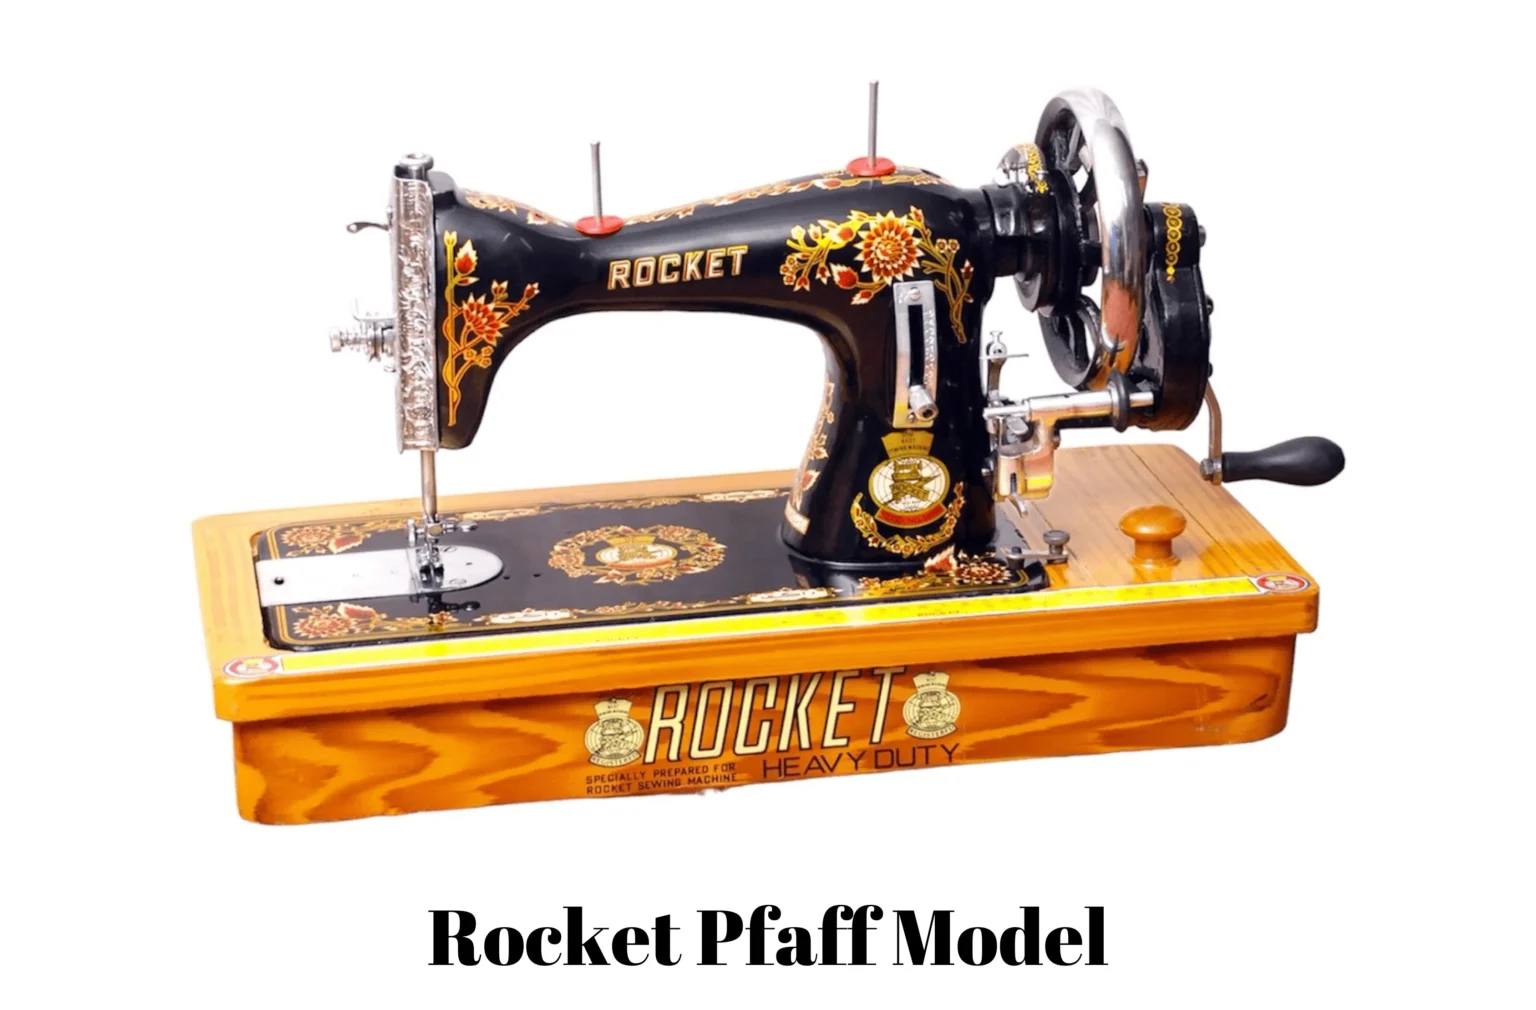 Rocket sewing machine